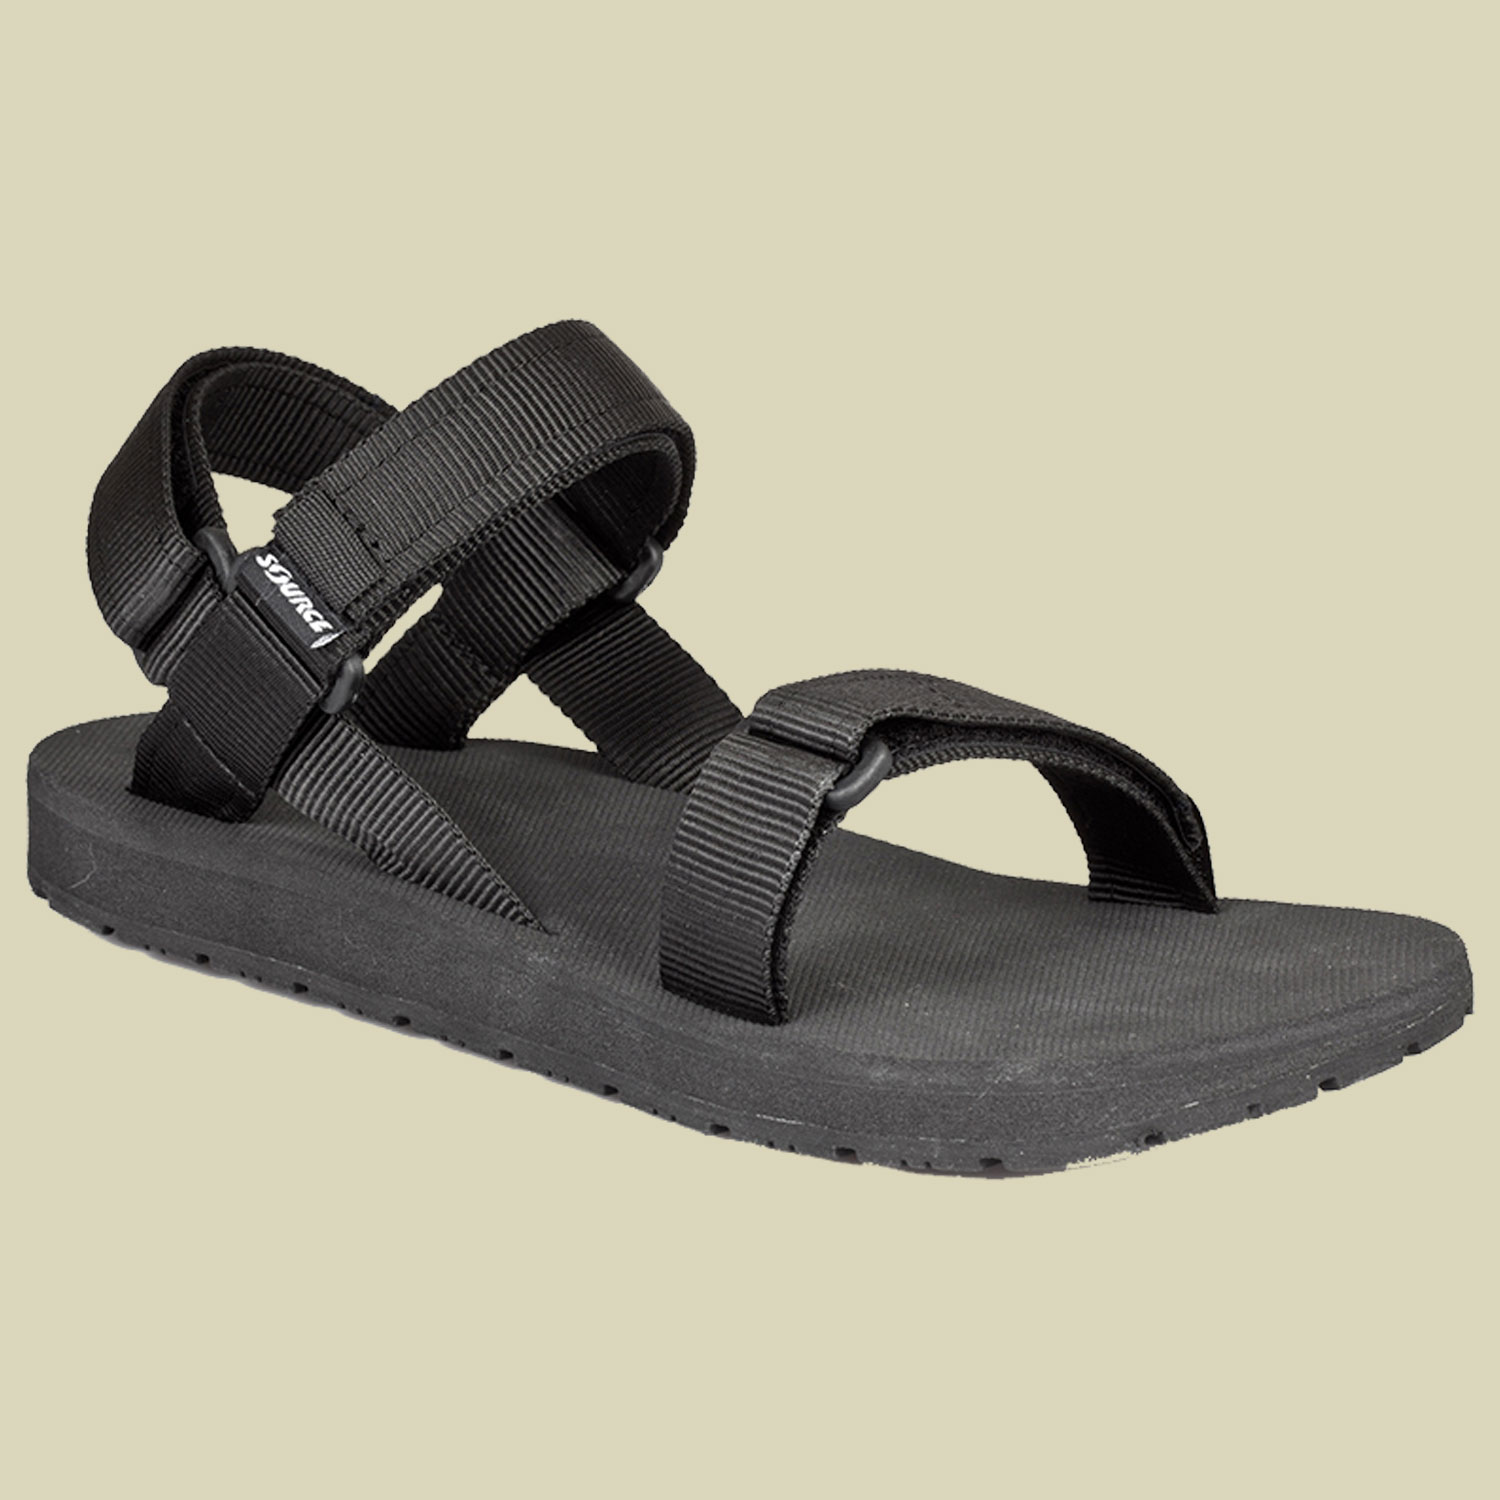 Classic Sandale Men Größe 41 Farbe black von Source Ltd.